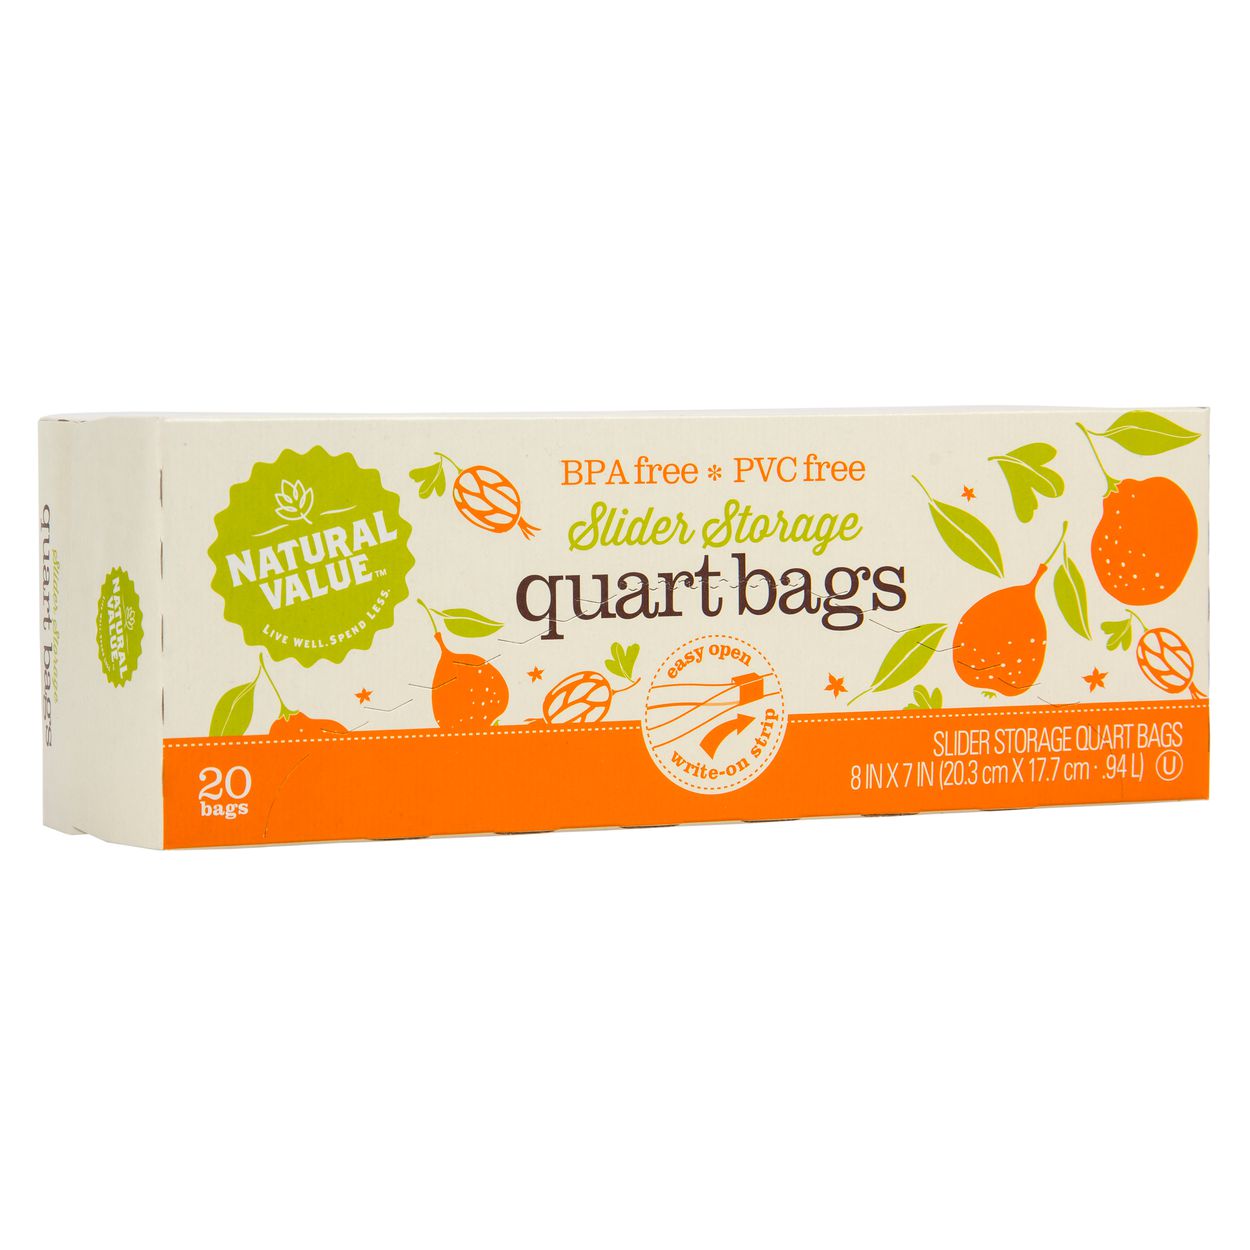 Natural Value Slider Storage Bags, Quart size - Azure Standard